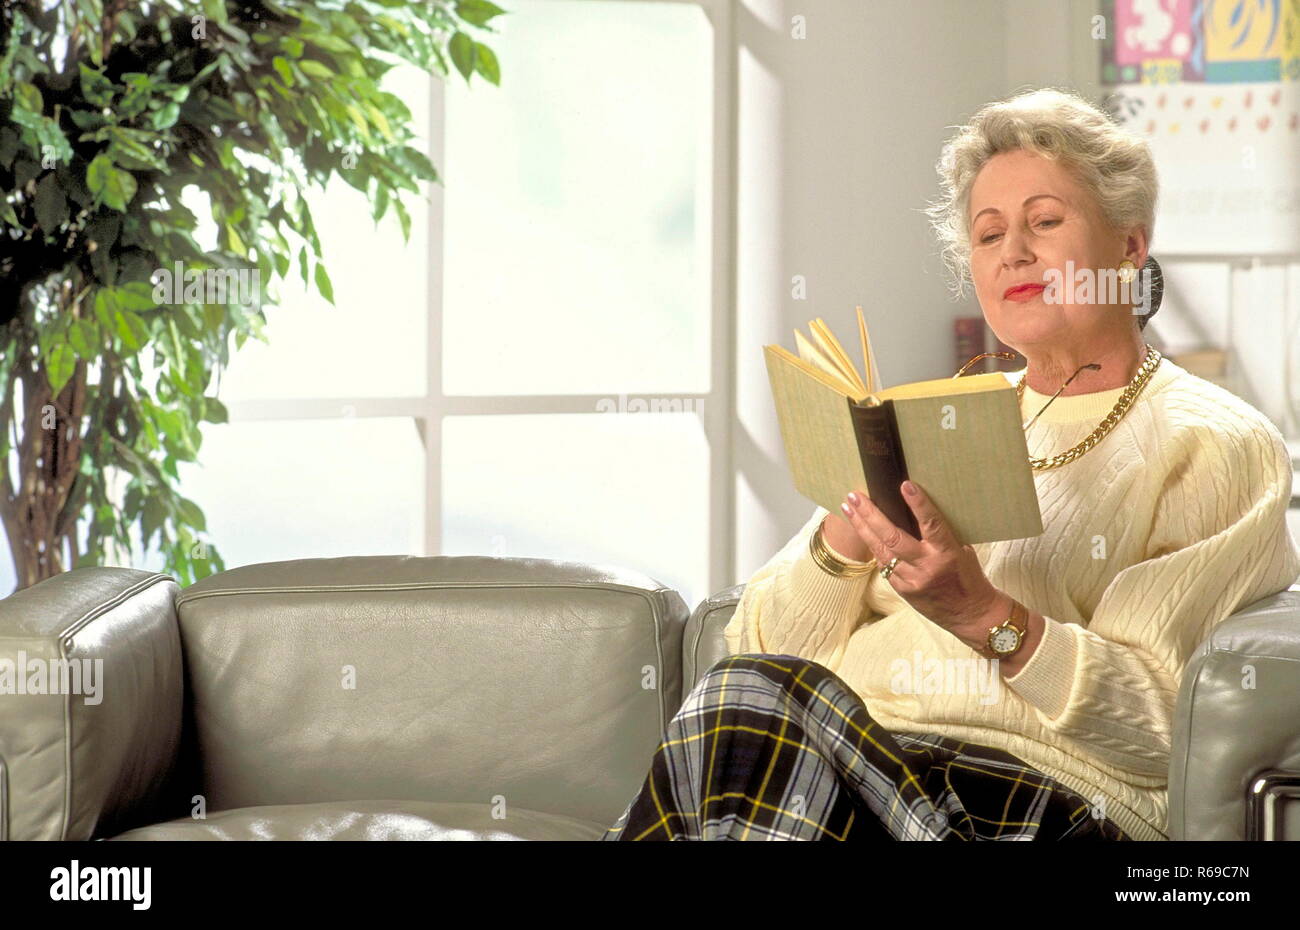 Portrait, Halbfigur, Frau, ca. 60, mit kurzen grauem Haaren sitzt auf dem Sofa und liest ein Buch Stock Photo